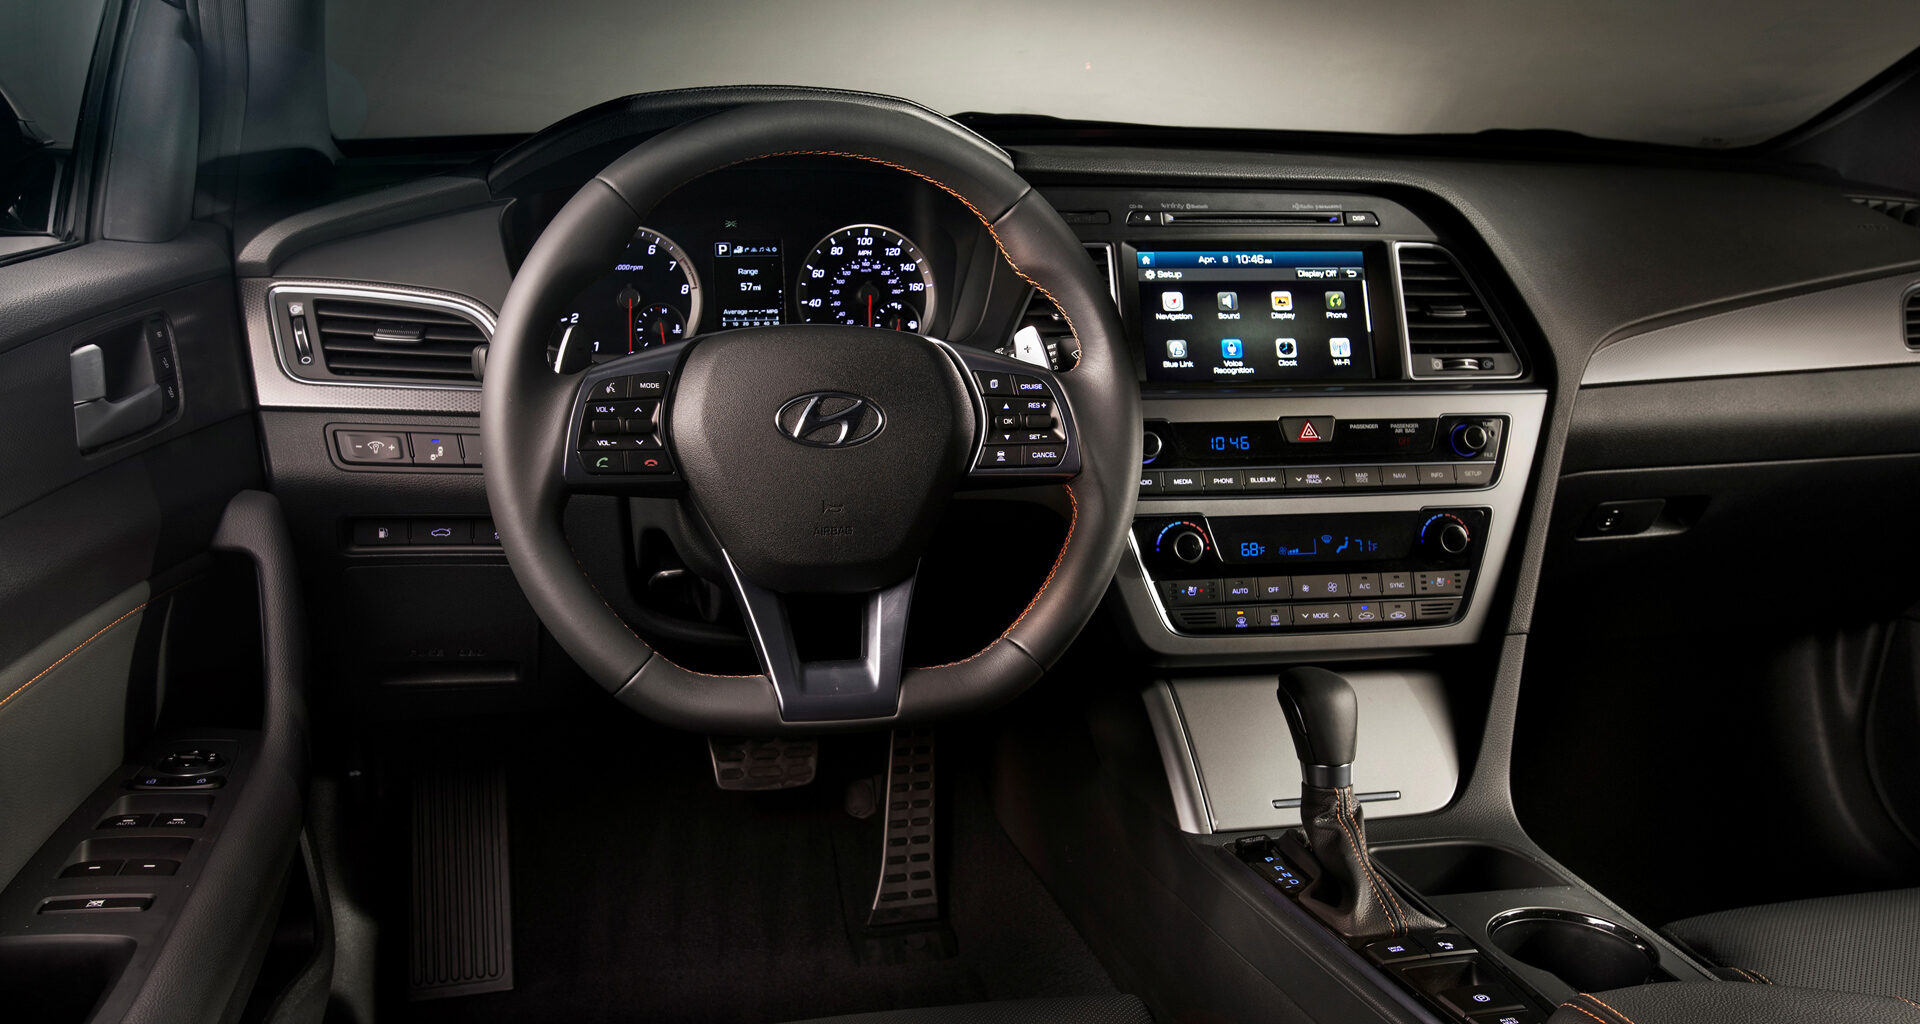 Ngắm nhìn chi tiết nội thất của dòng xe Hyundai Sonata 2